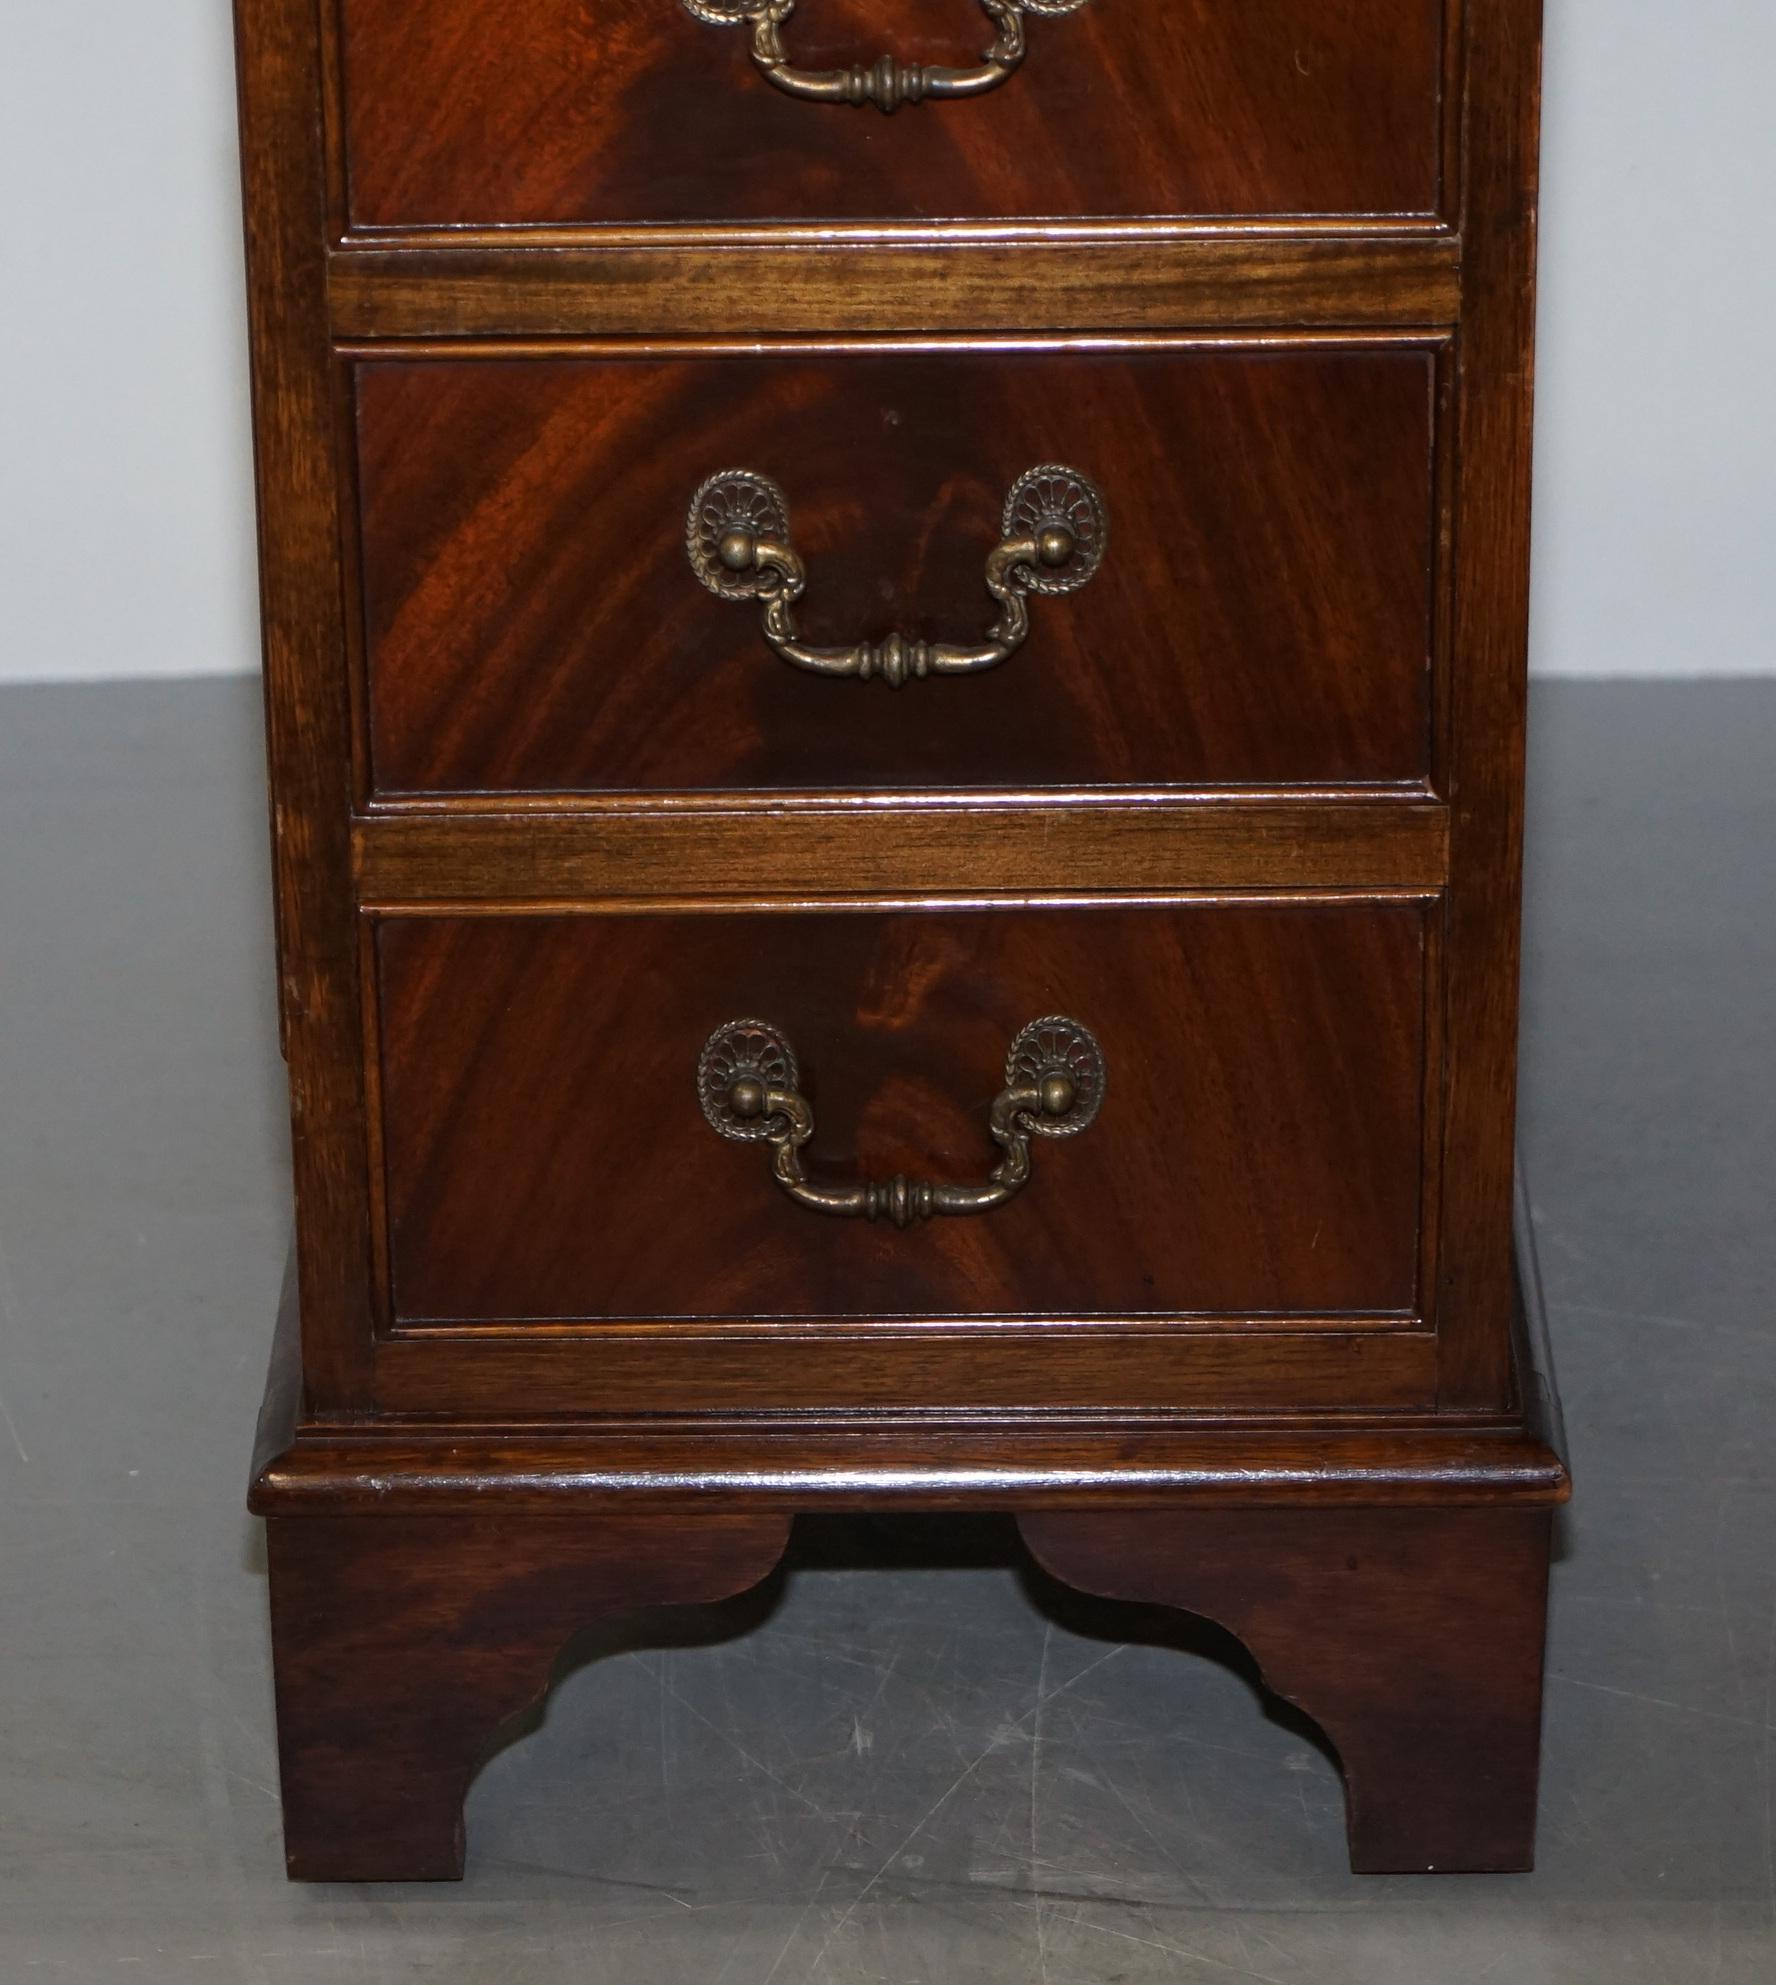 Vintage Hardwood Twin Pedestal Partner Desk With Distressed Brown Leather Top 1